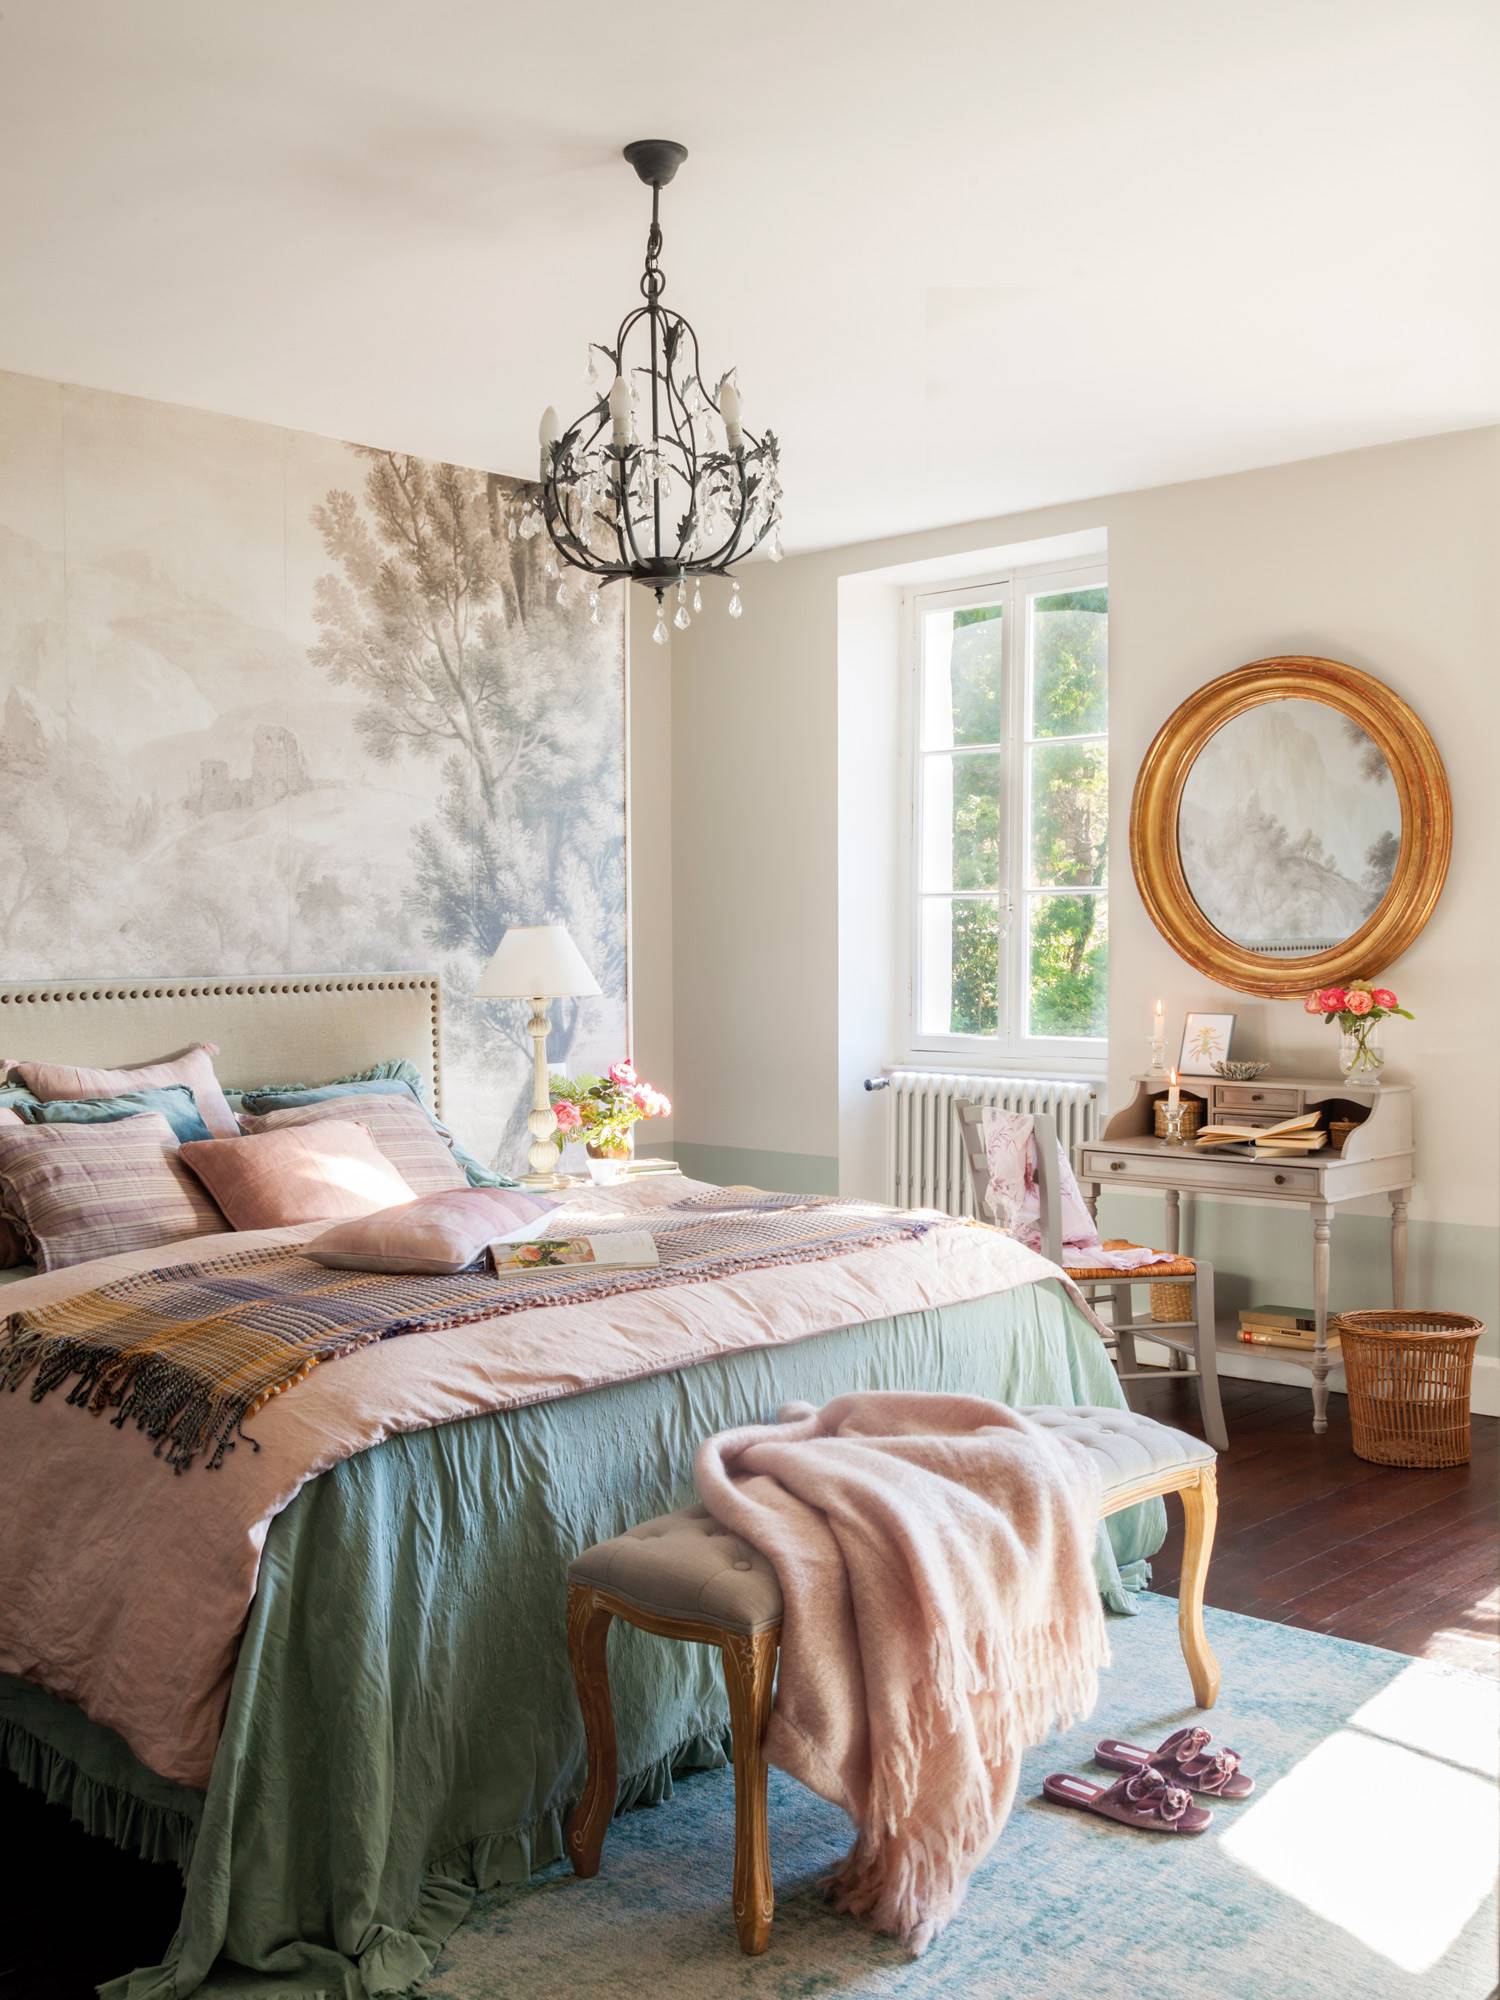 Dormitorio clásico con mural con motivos vegetales en la pared, lámpara de araña y escritorio de anticuario.